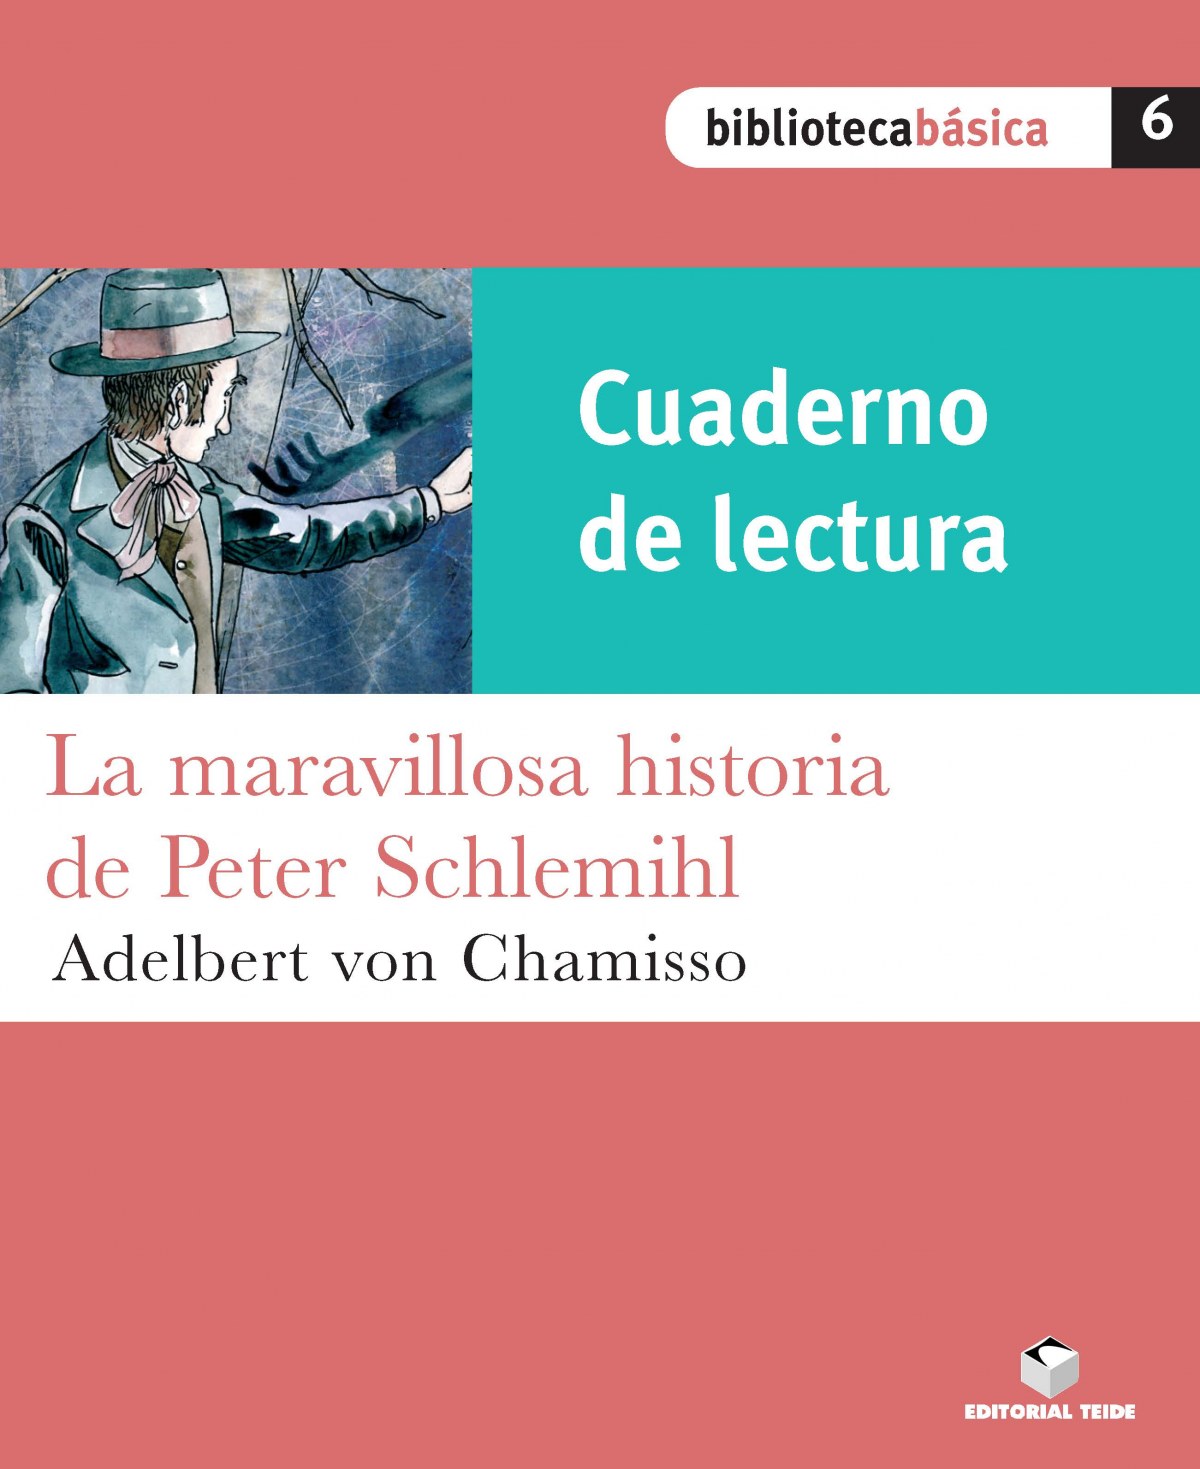 Cuad.lectura maravillosa historia Peter Schlemihl - Vv.Aa.